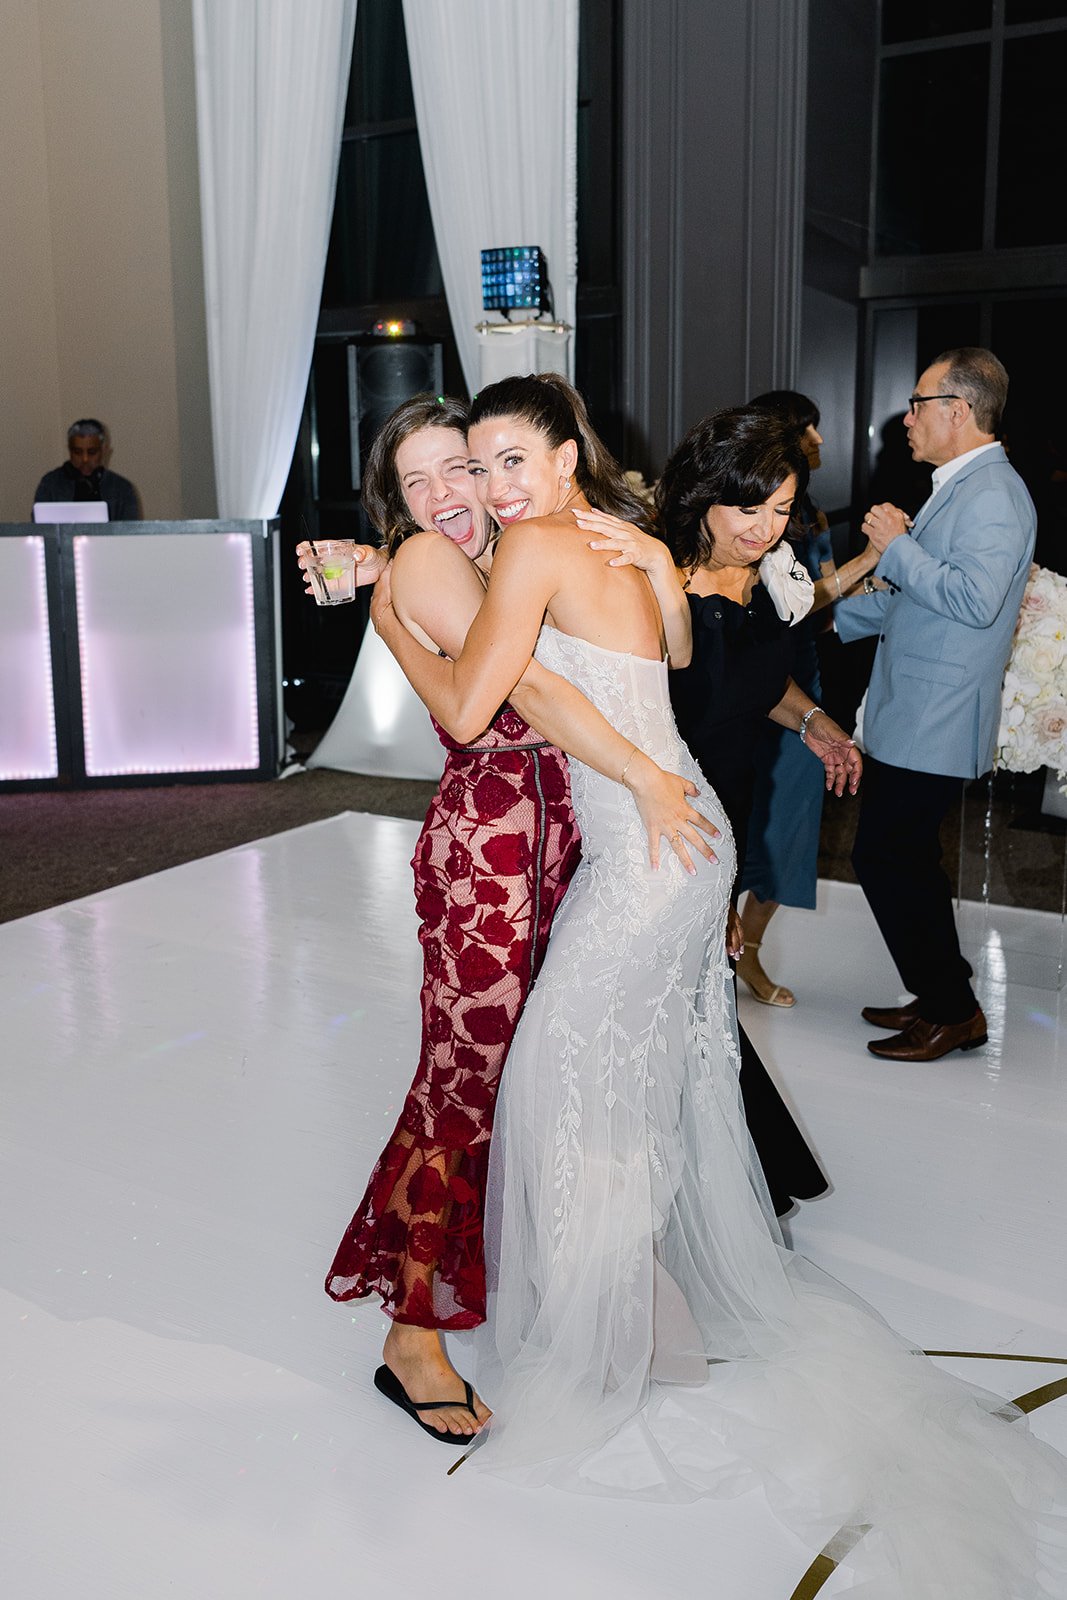 A beautiful bride hugs her friend on the dancefloor of her wedding.